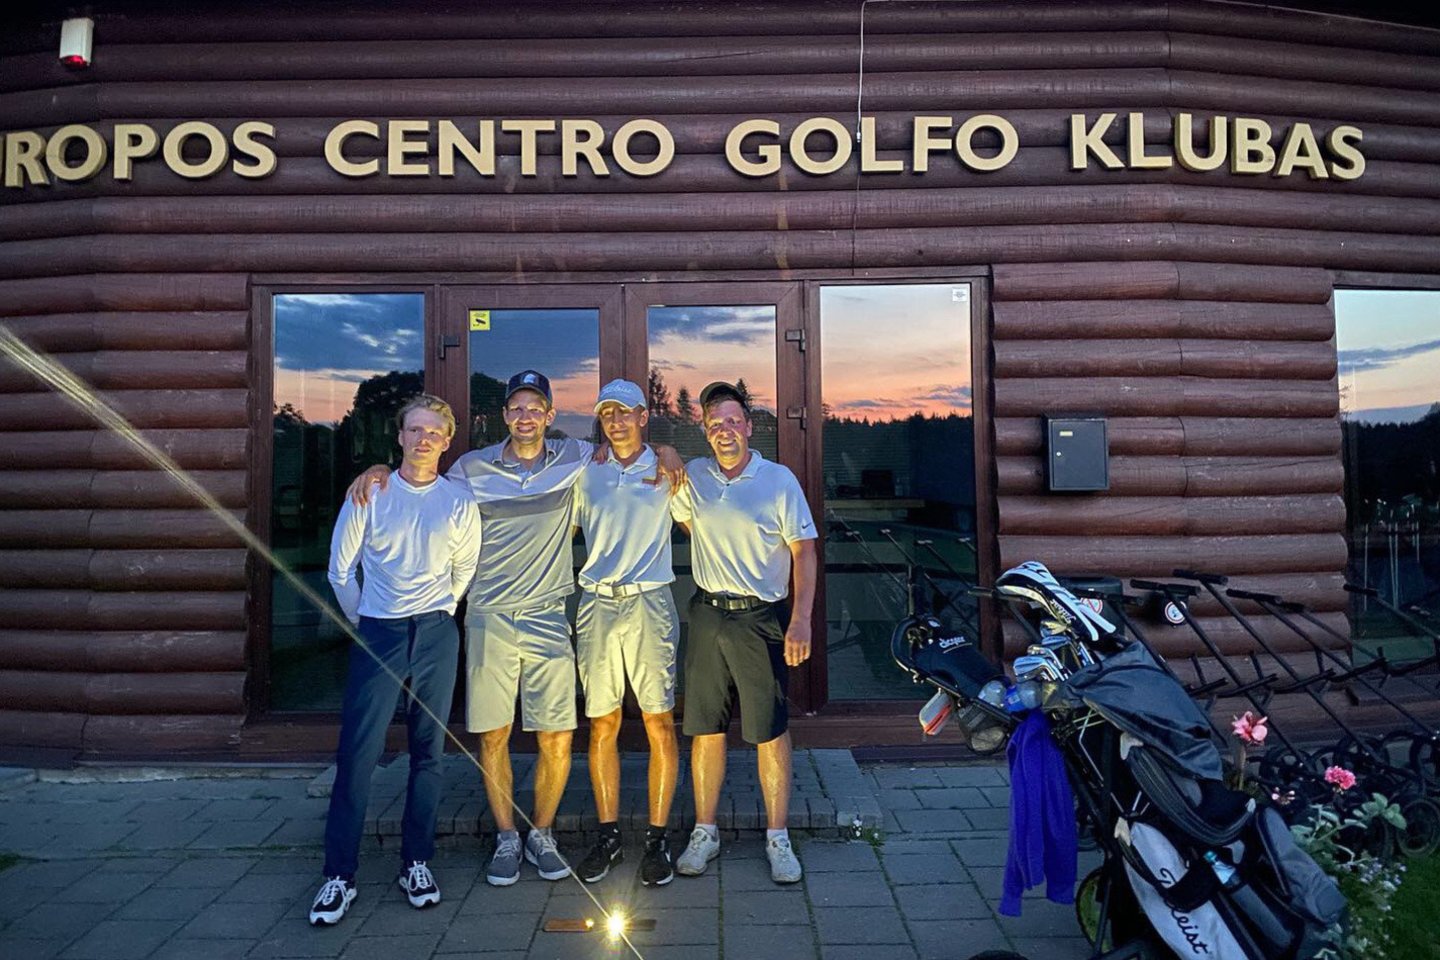  Užfiksuotas unikalus Lietuvos rekordas – golfo žaidėjai per dieną sužaidė net 108 duobutes<br> LGF nuotr.